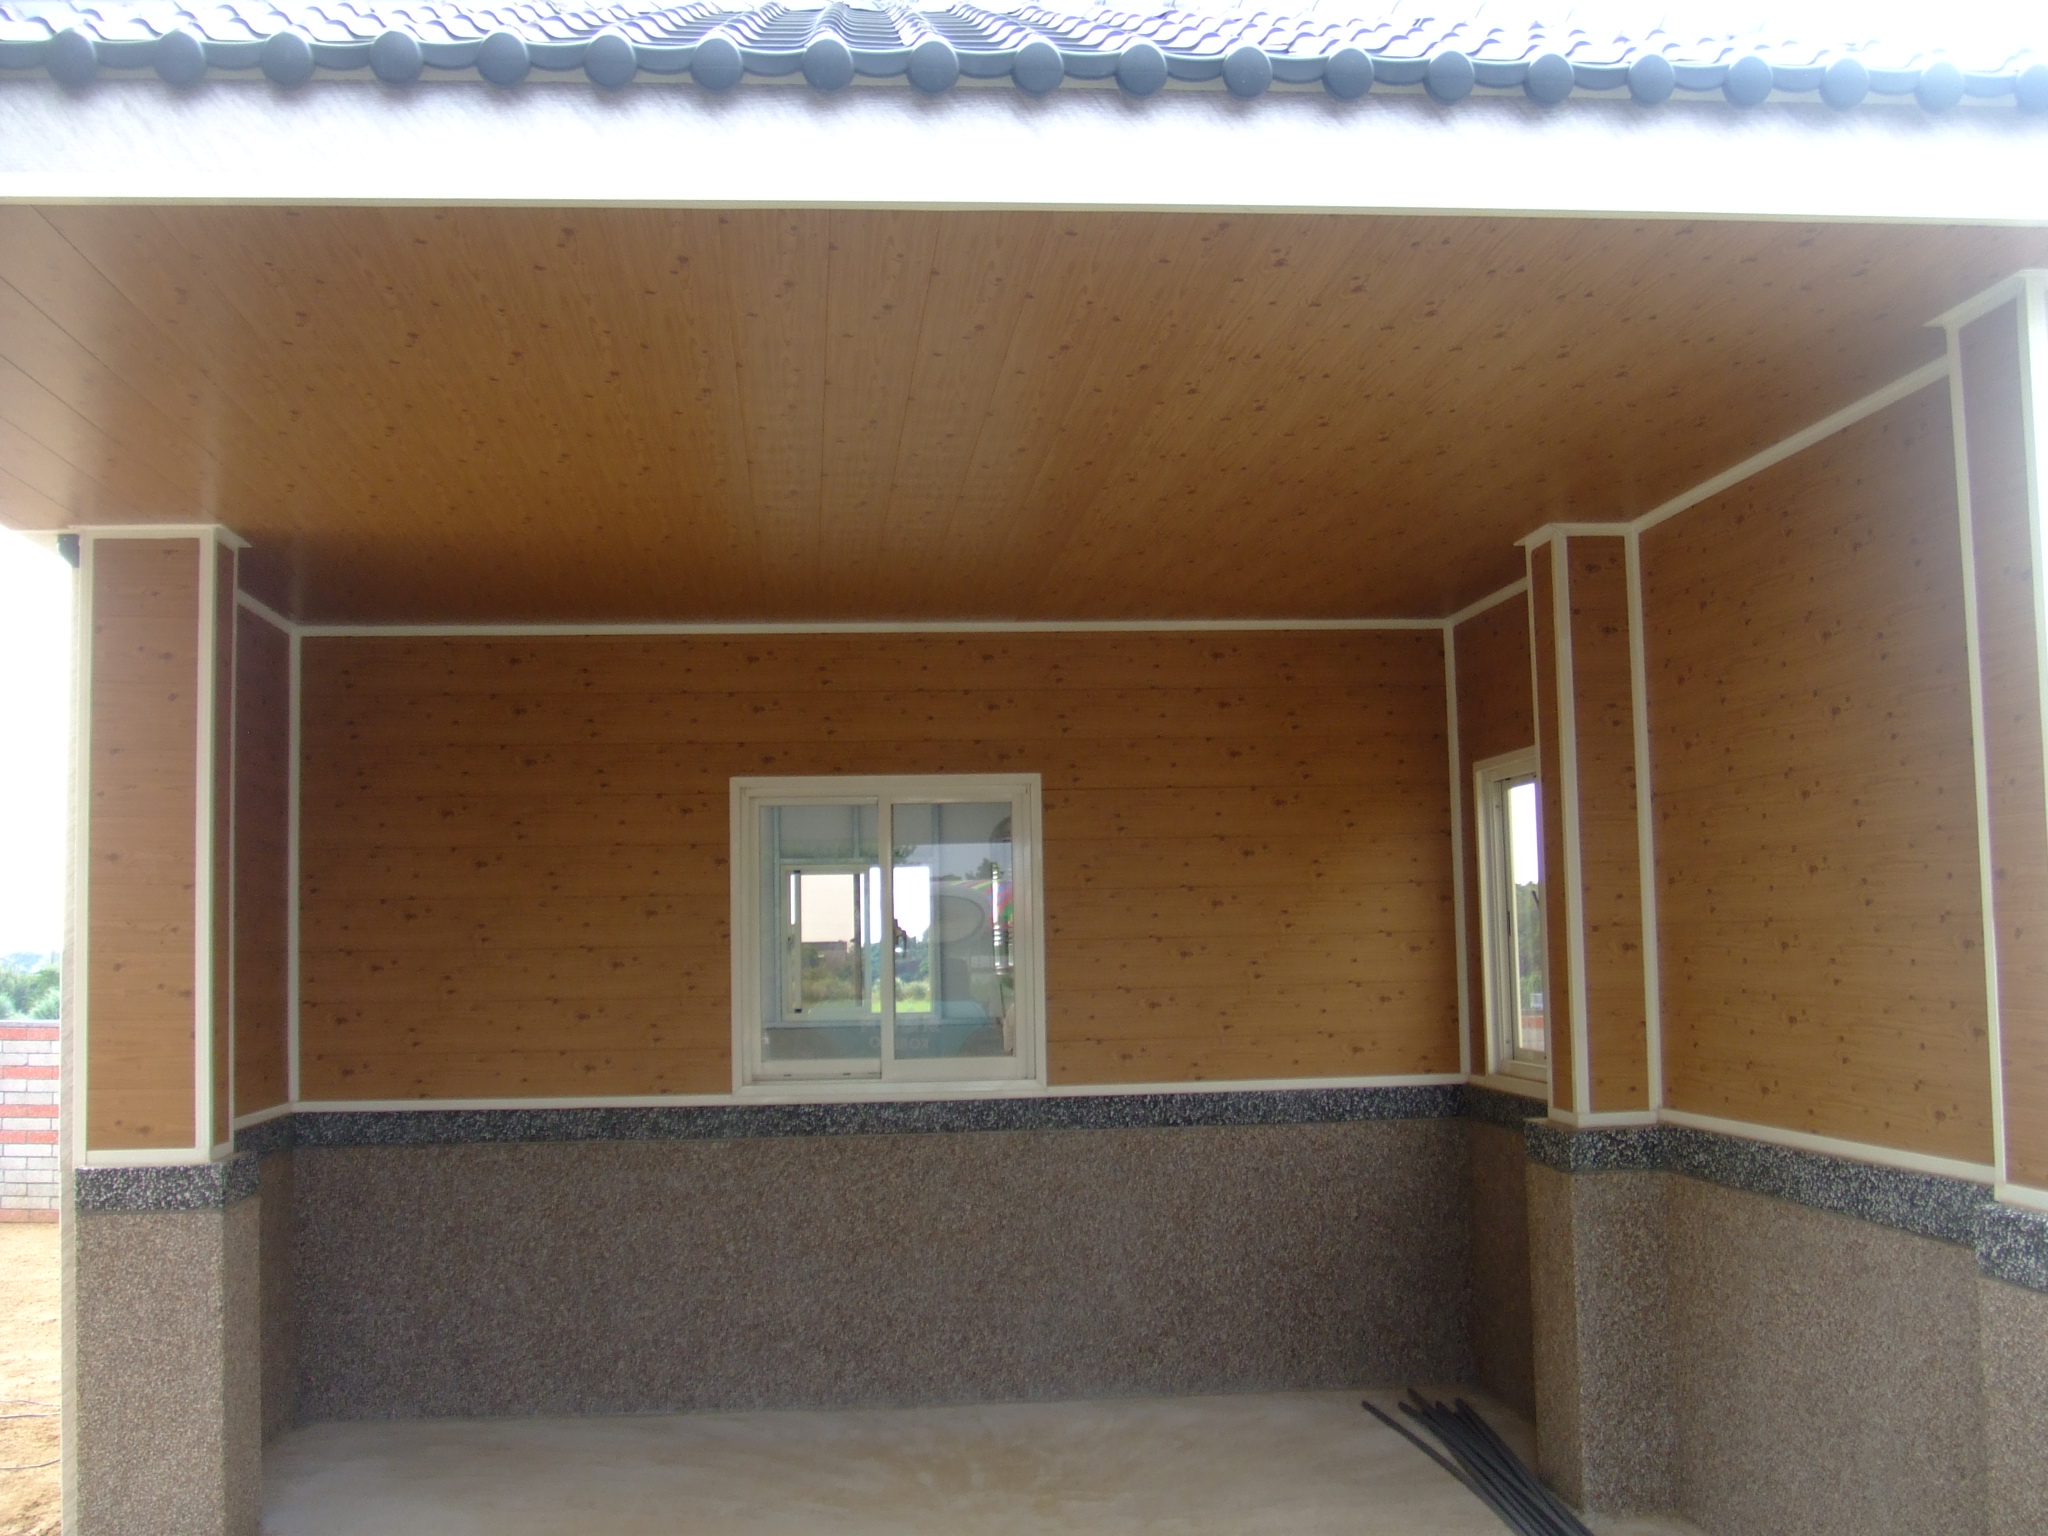 屋頂 琉璃鋼瓦 壁板 深松木 鋐耀彩色鋼板有限公司